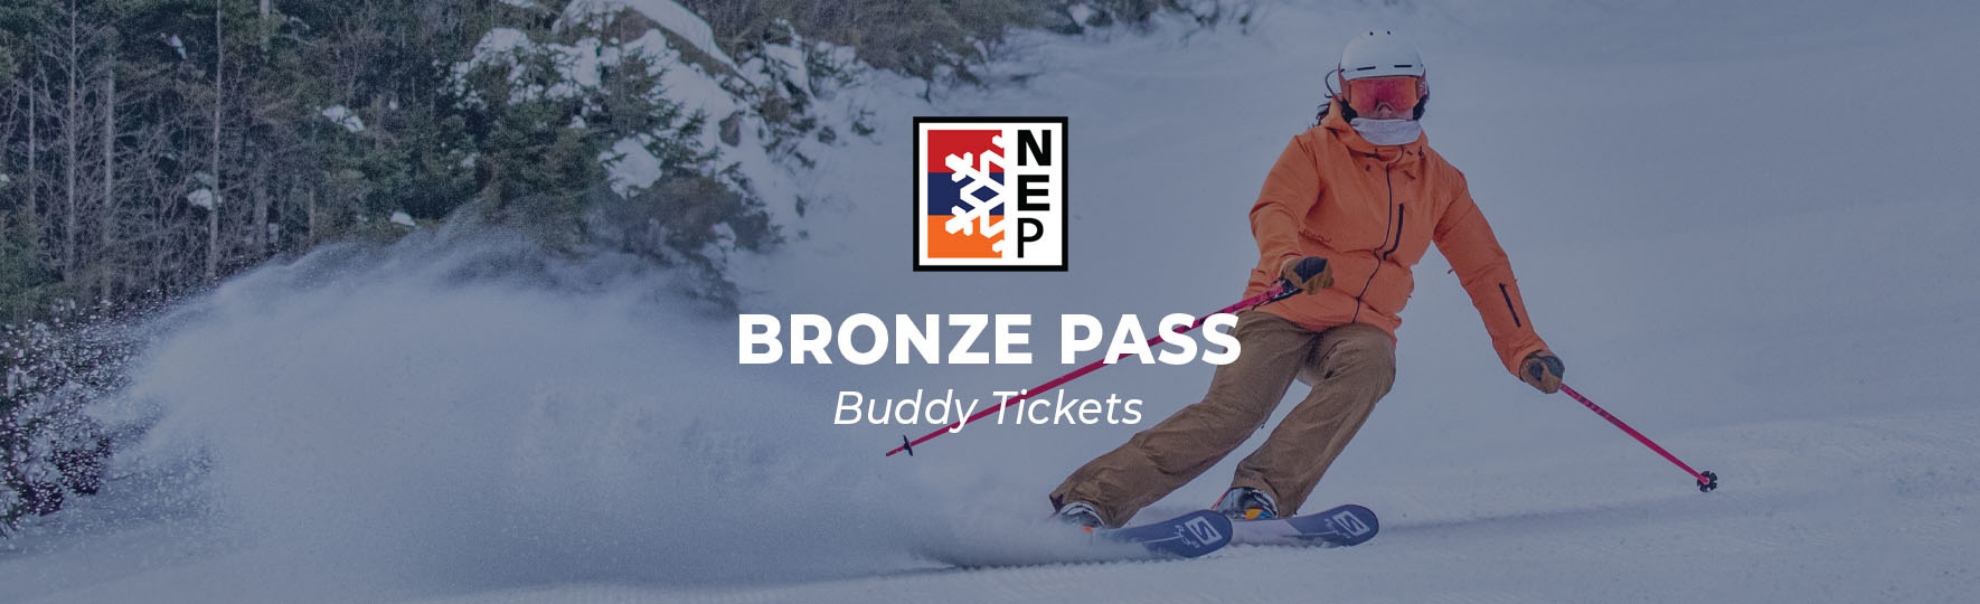 Bronze Pass Buddy Tickets